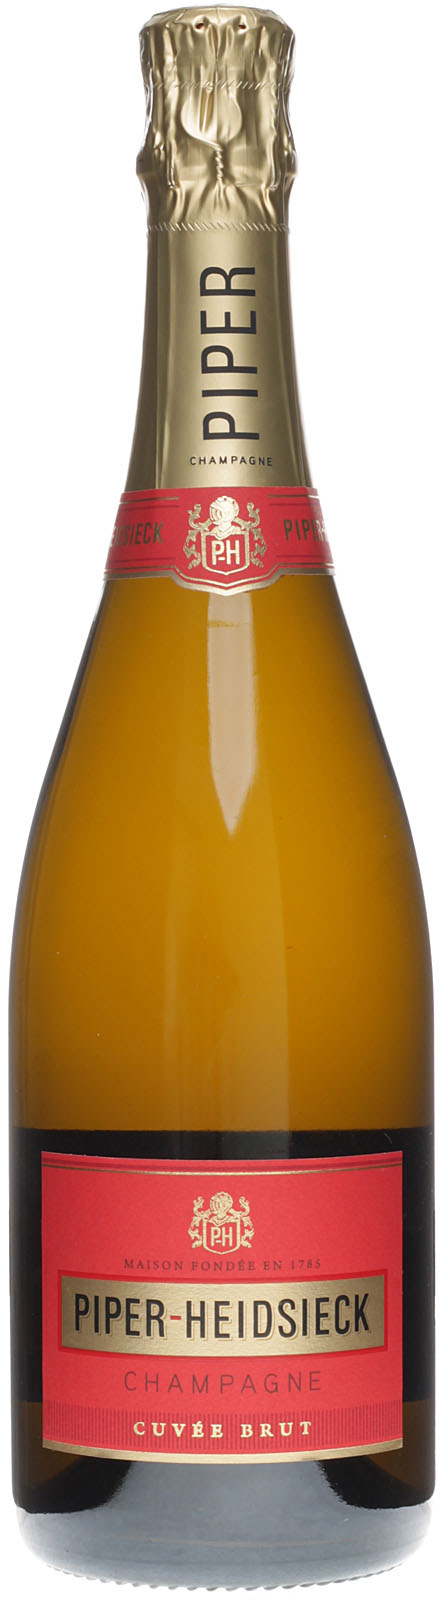 Piper-Heidsieck Champagner Cuvée Brut 0,75 12 Liter V 